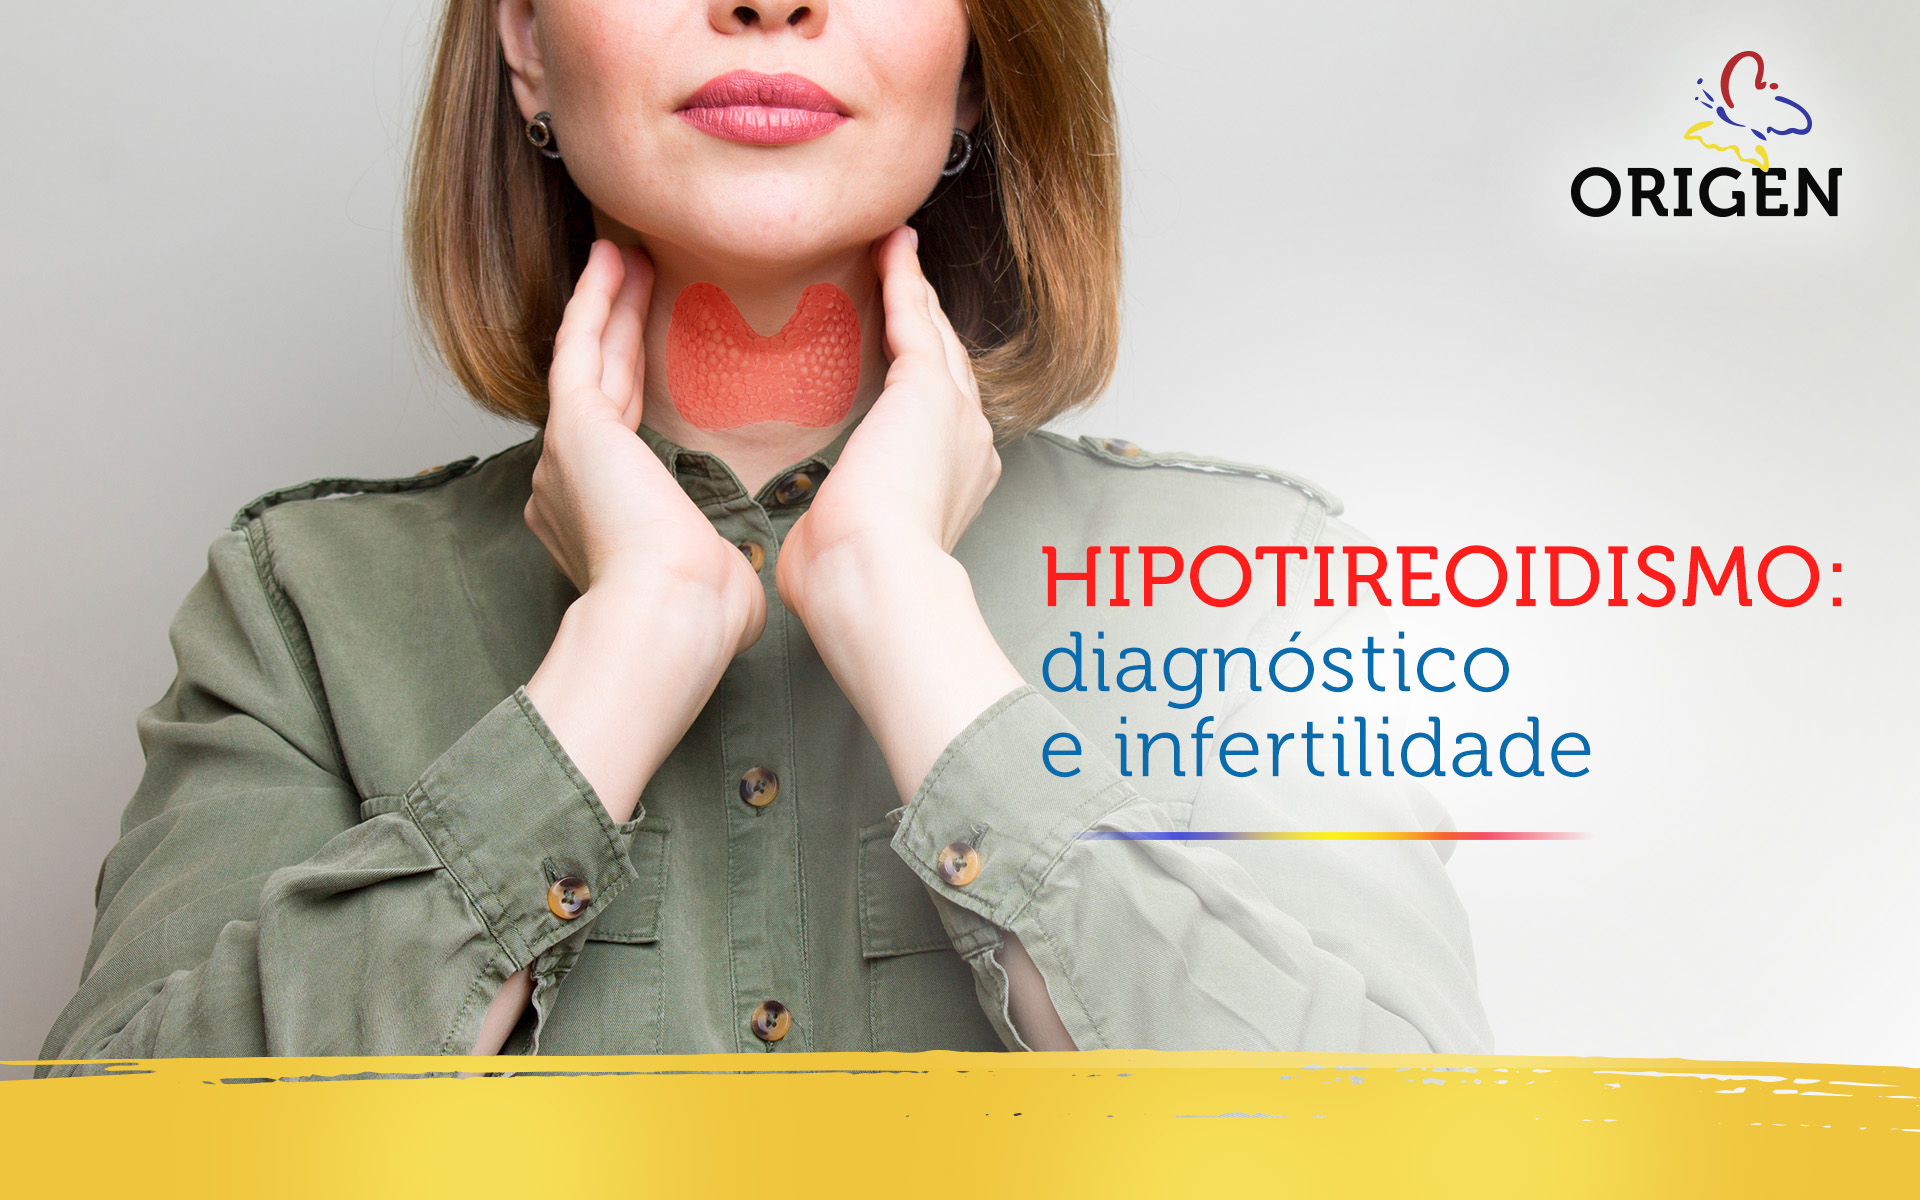 Hipotireoidismo: diagnóstico e infertilidade